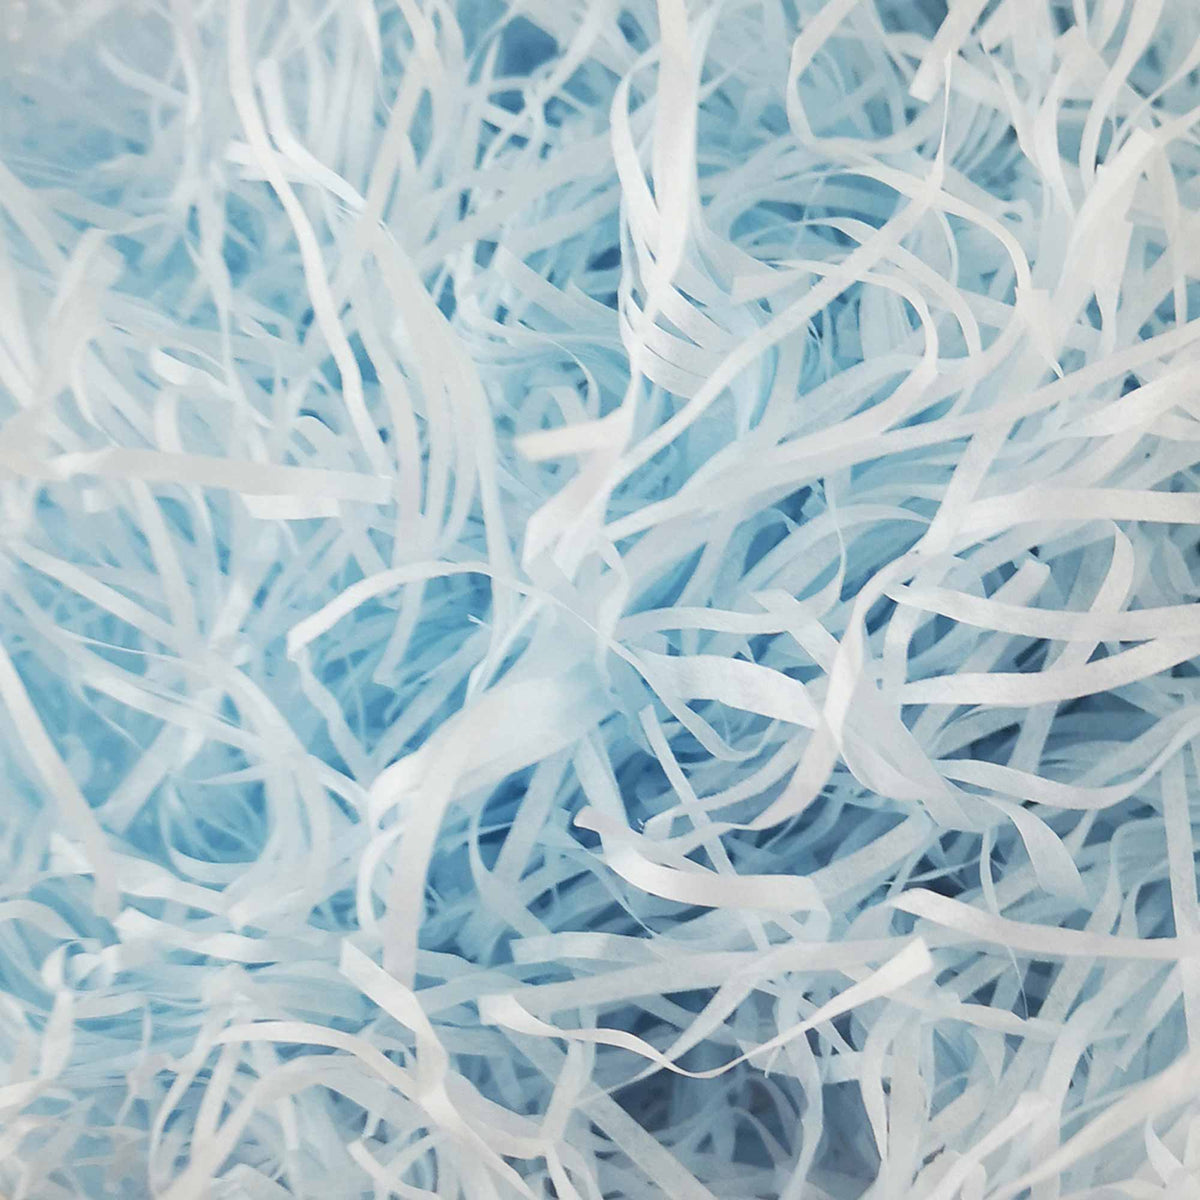 Shredded Tissue Paper for Packaging and Decor - Light Blue